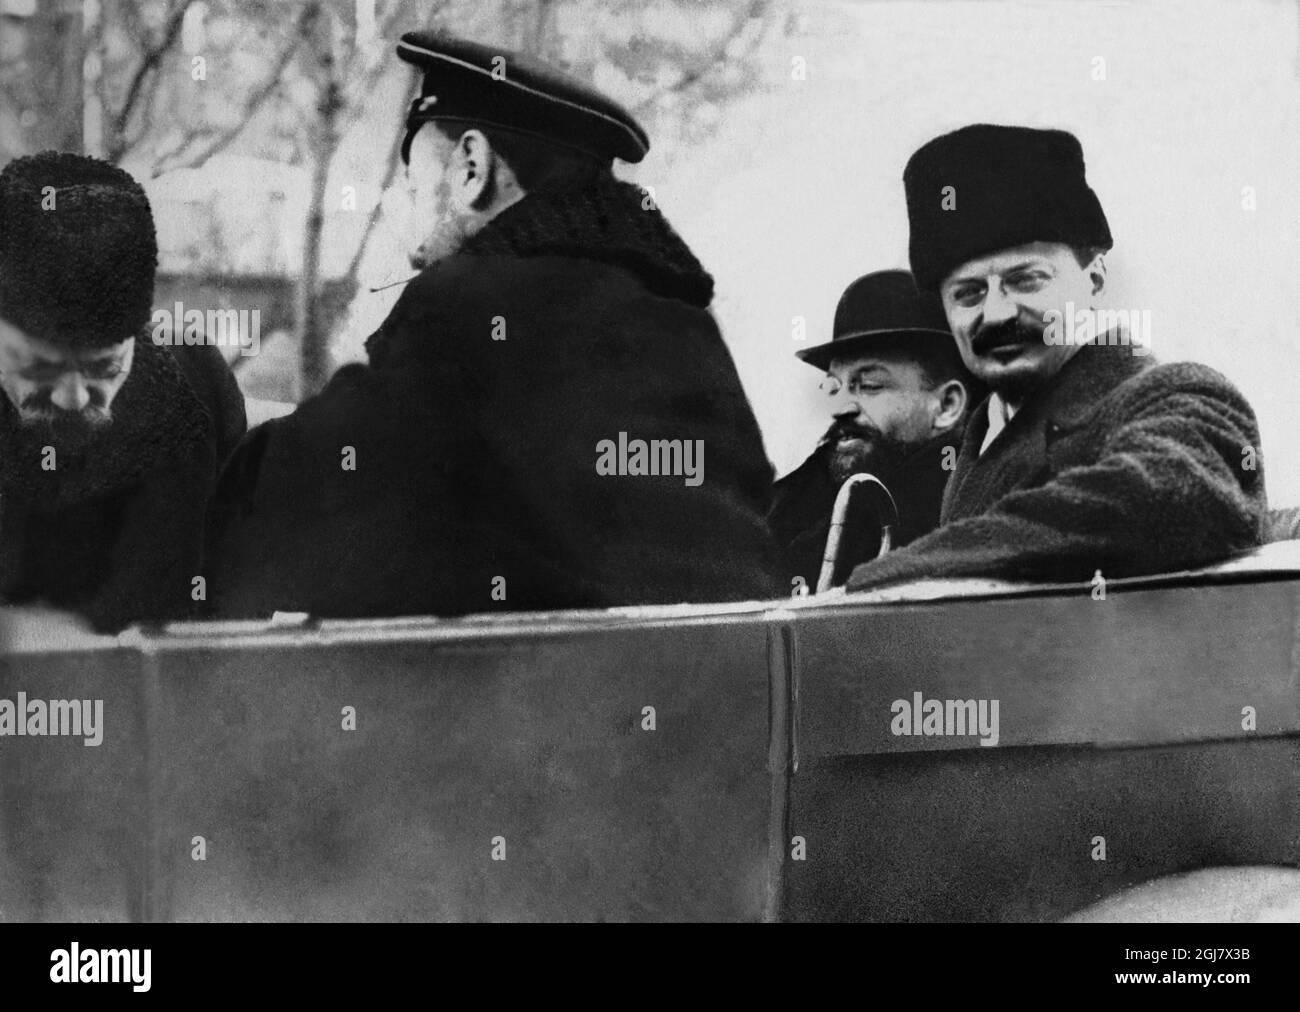 IMMAGINE 1918. La prima guerra mondiale il politico russo Lev Trotsky sulla via dei colloqui di pace a Brest-Litovsk. Foto Stock